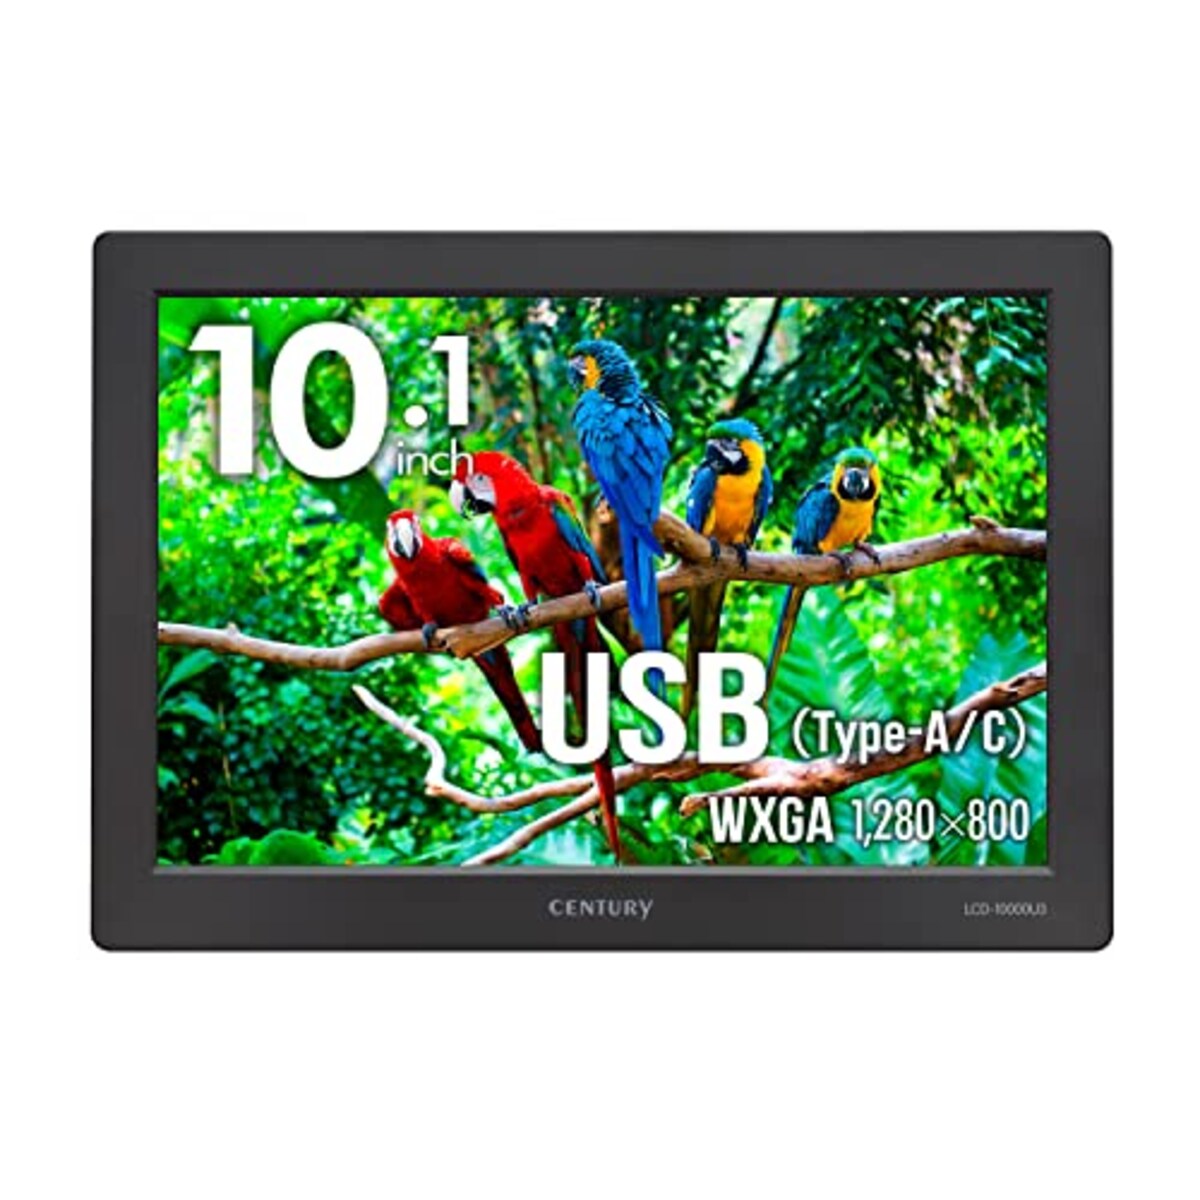  センチュリー 10.1インチ USBモニター plus one USB LCD-10000U3_FP画像4 